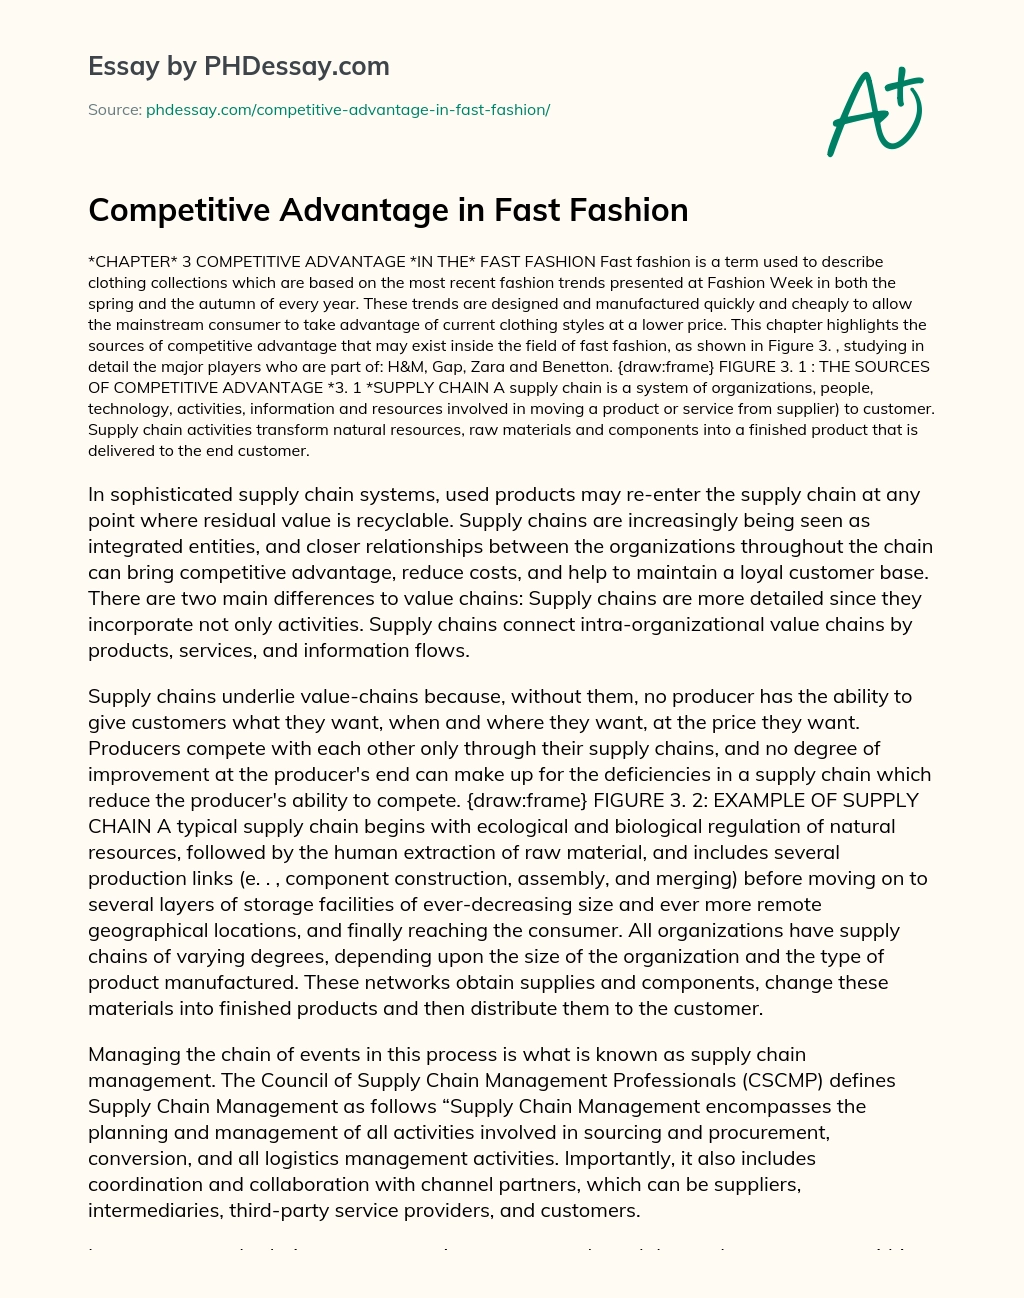 Competitive Advantage in Fast Fashion essay